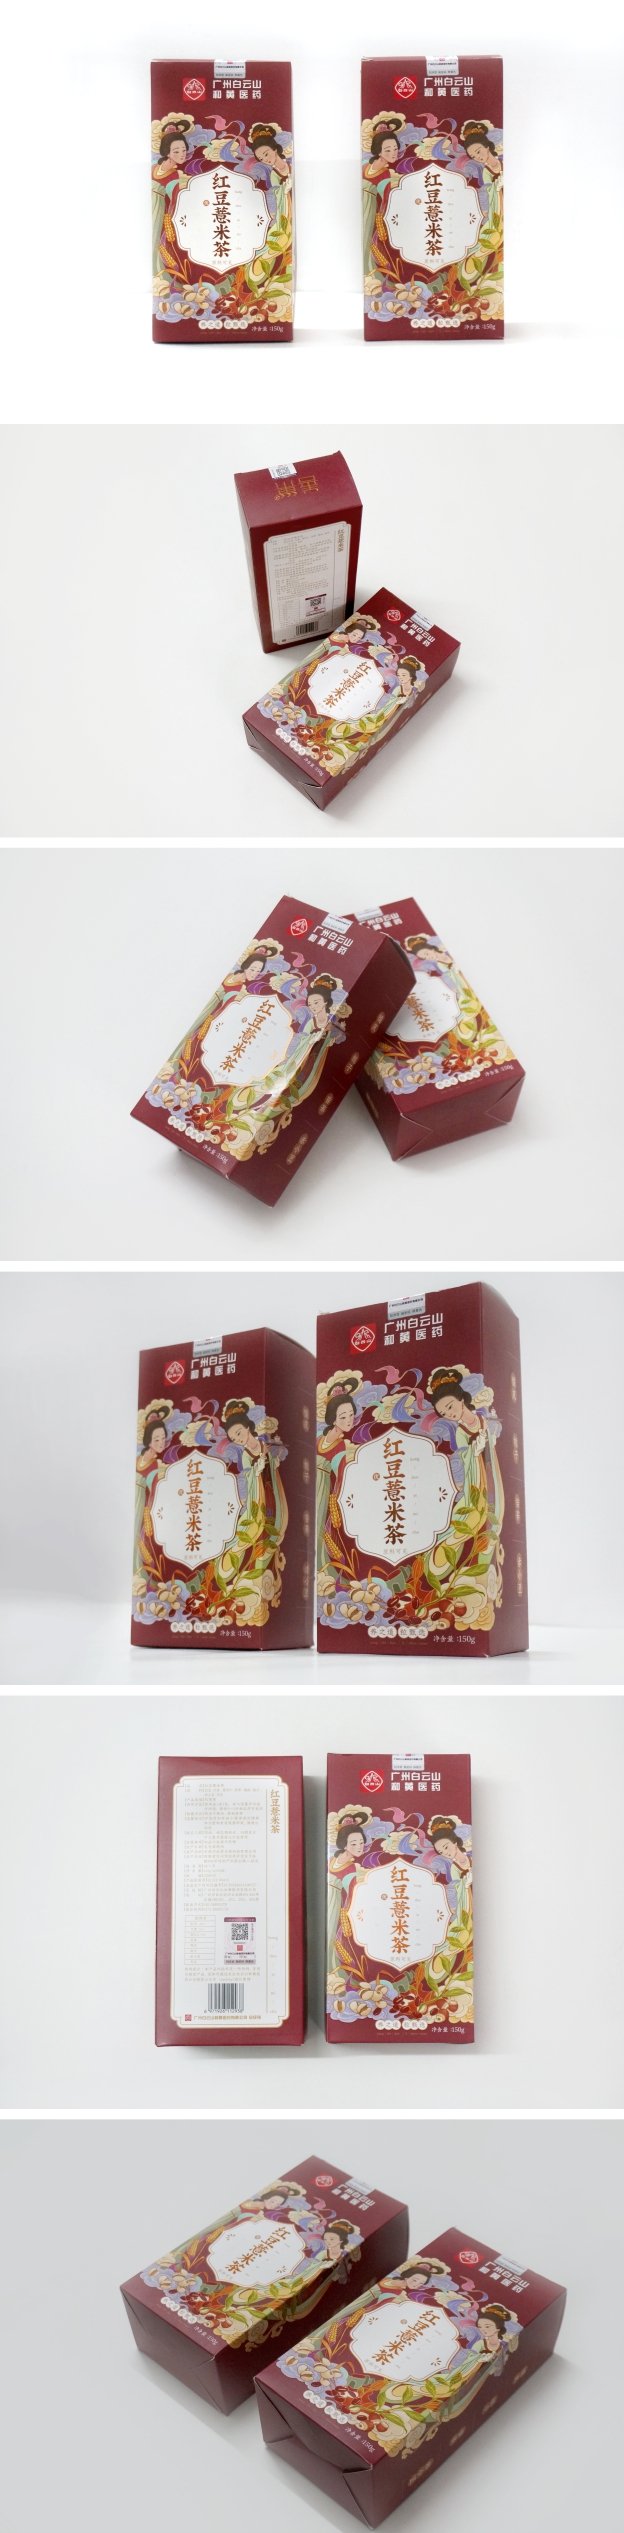 红豆薏米茶包装设计